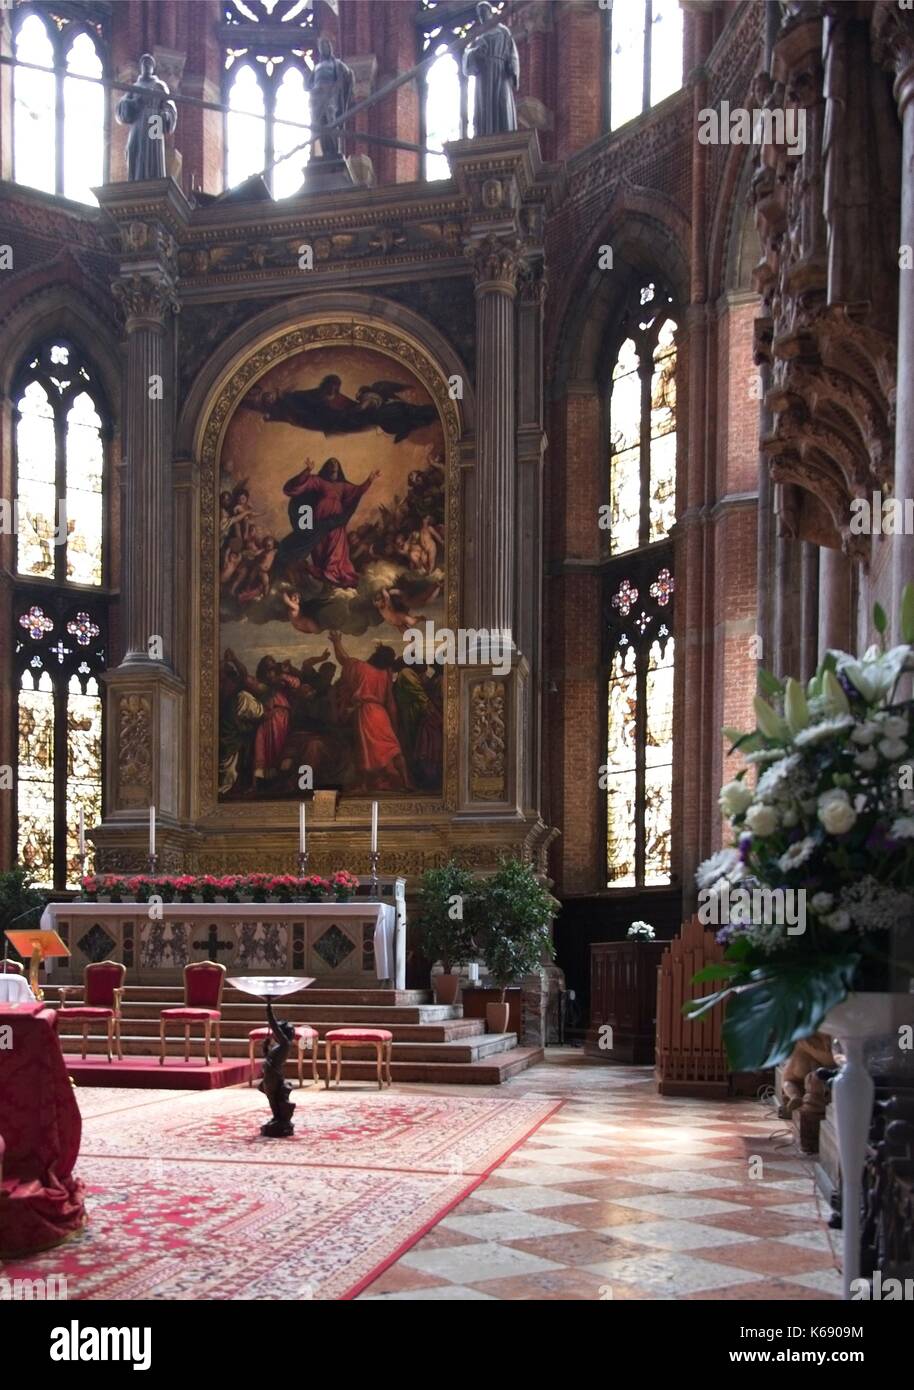 Venecia Italia. La Basílica de Santa Maria Gloriosa dei Frari (I Frari). Presbiterio retablo Assunta de Tiziano - la asunción de la Virgen por Tiziano Foto de stock